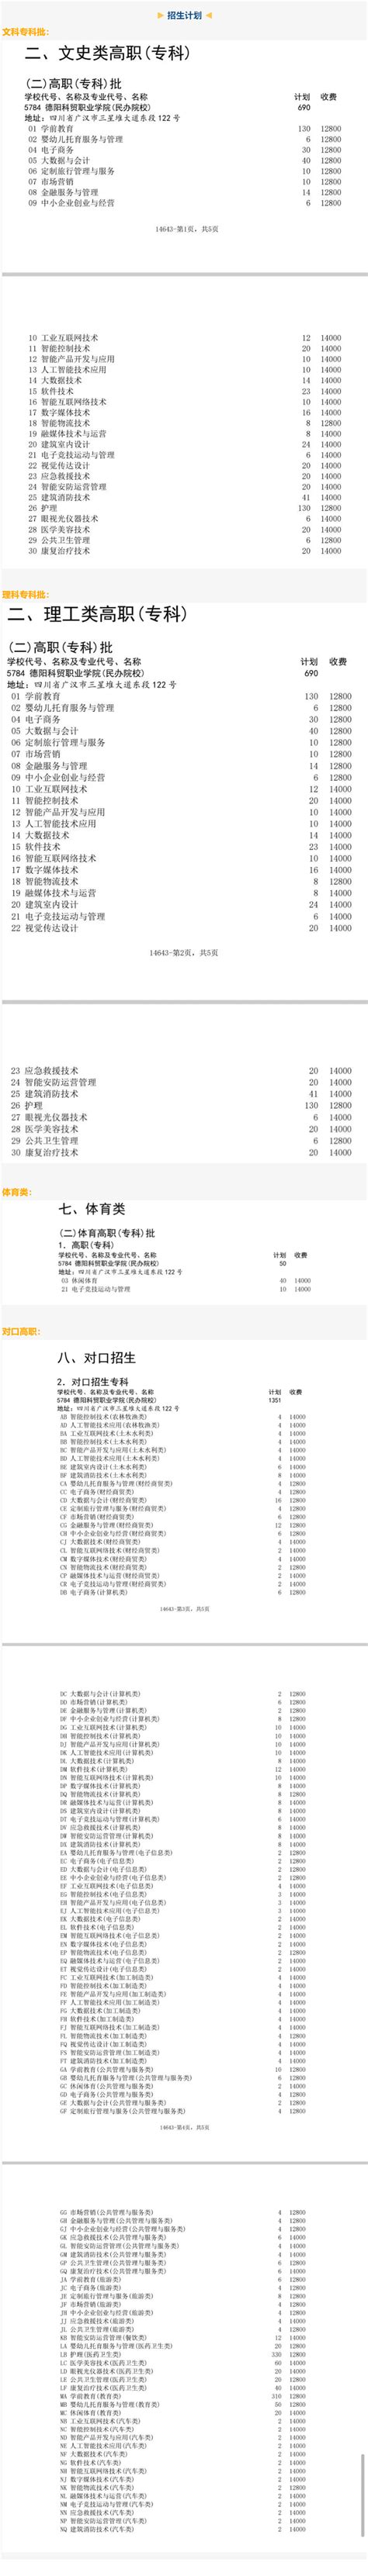 广汉三星堆博物馆将调整讲解服务收费标准- 德阳本地宝